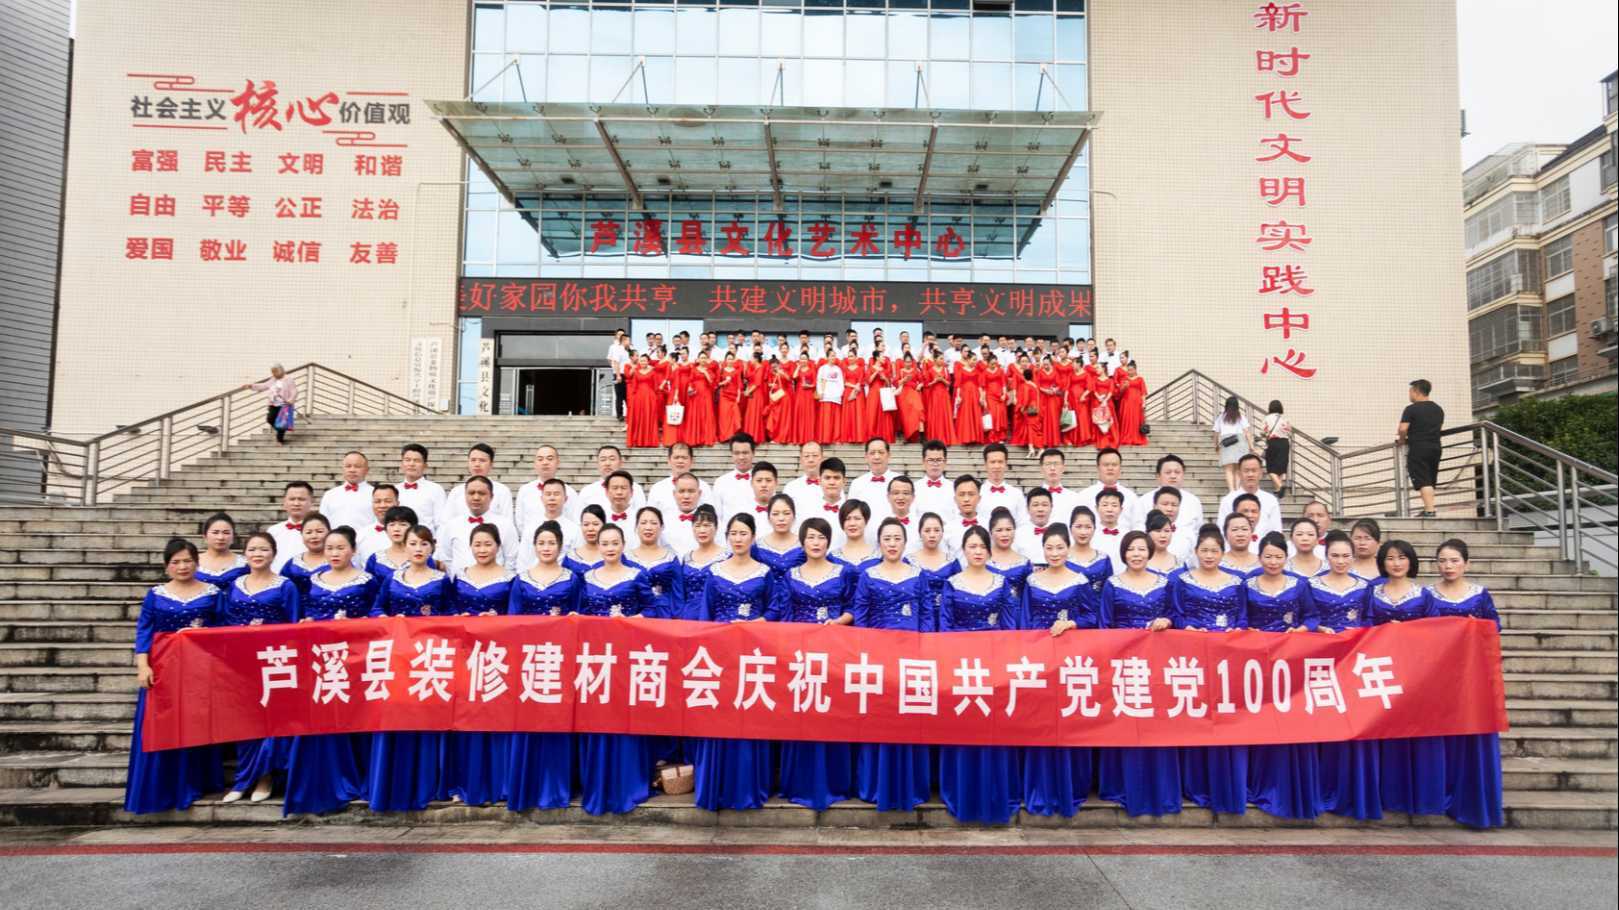 芦溪县装修建材商会庆祝中国共产党建党100周年《你是这样的人》合唱